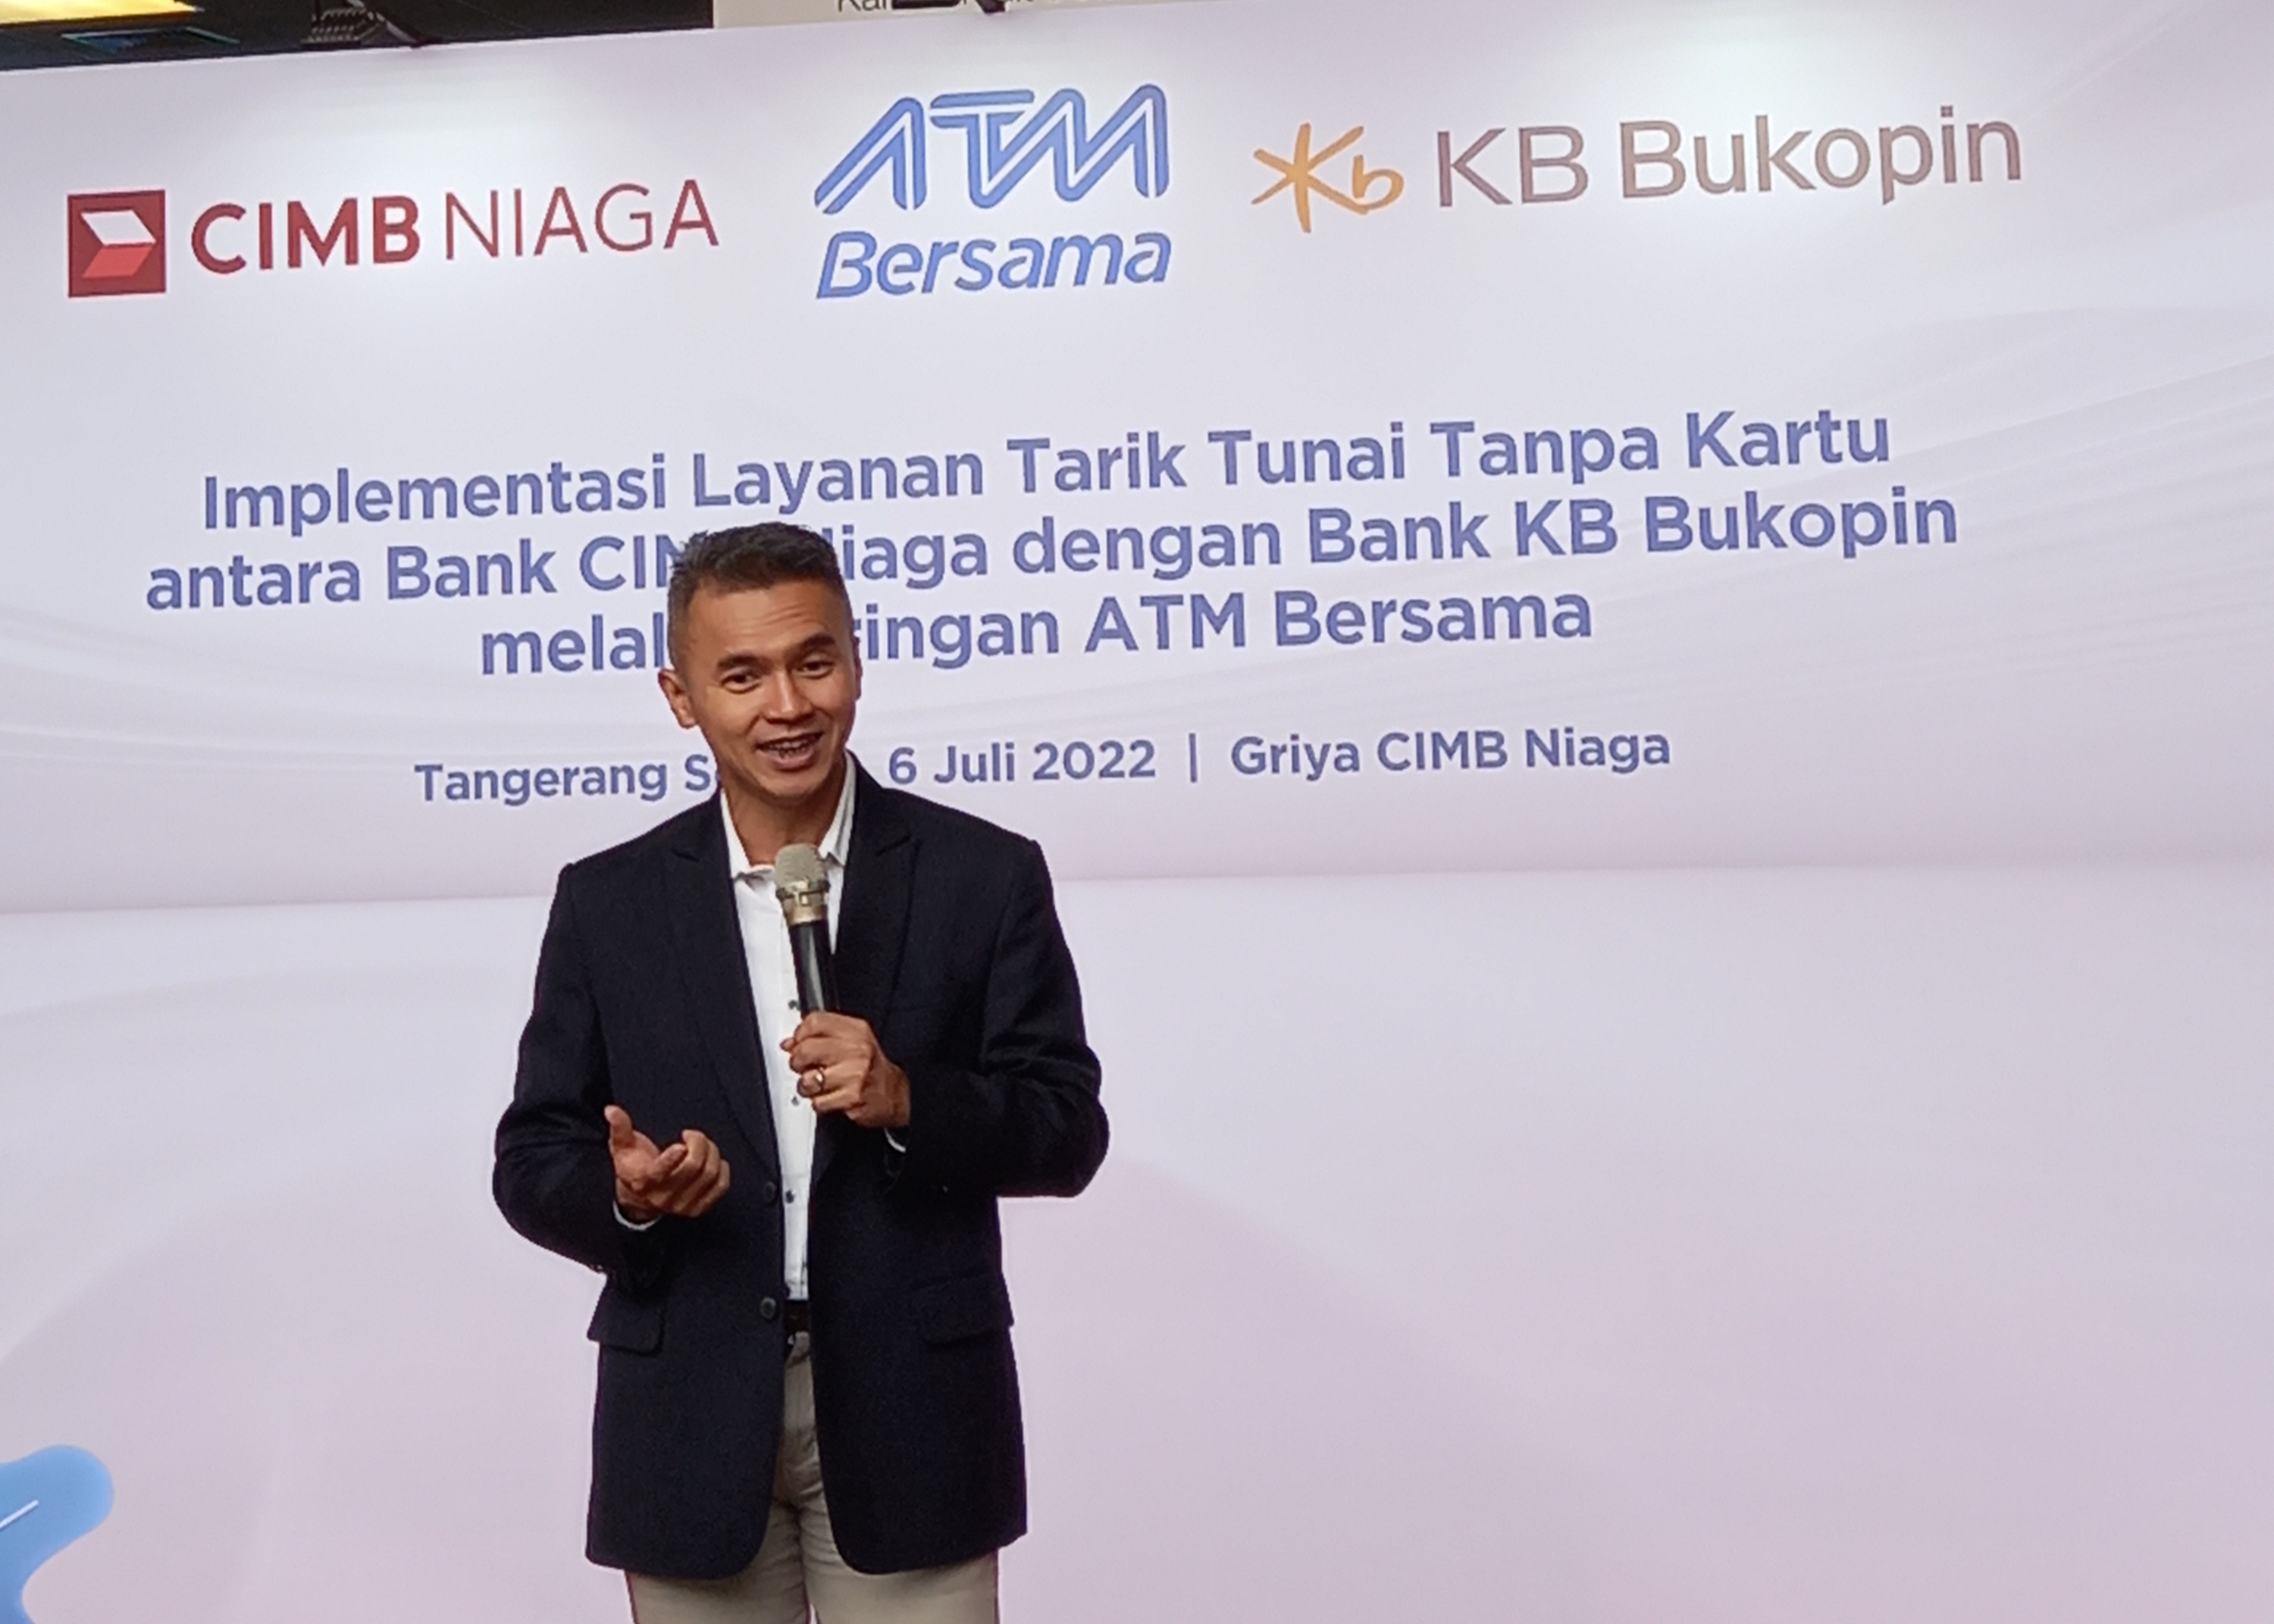 CIMB Niaga dan KB Bukopin (BBKP) Perluas Layanan Cardless Withdrawal di  ATM Bersama